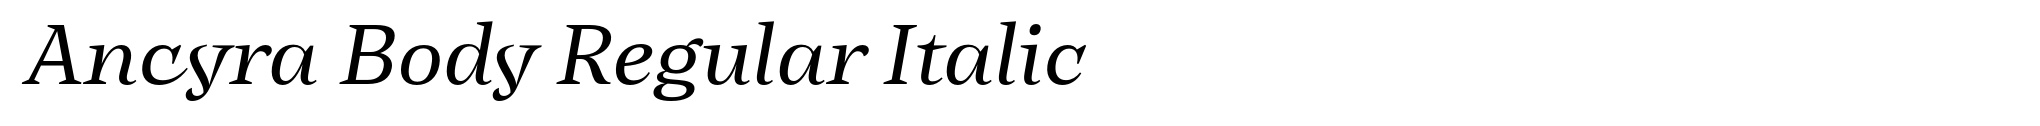 Ancyra Body Regular Italic image